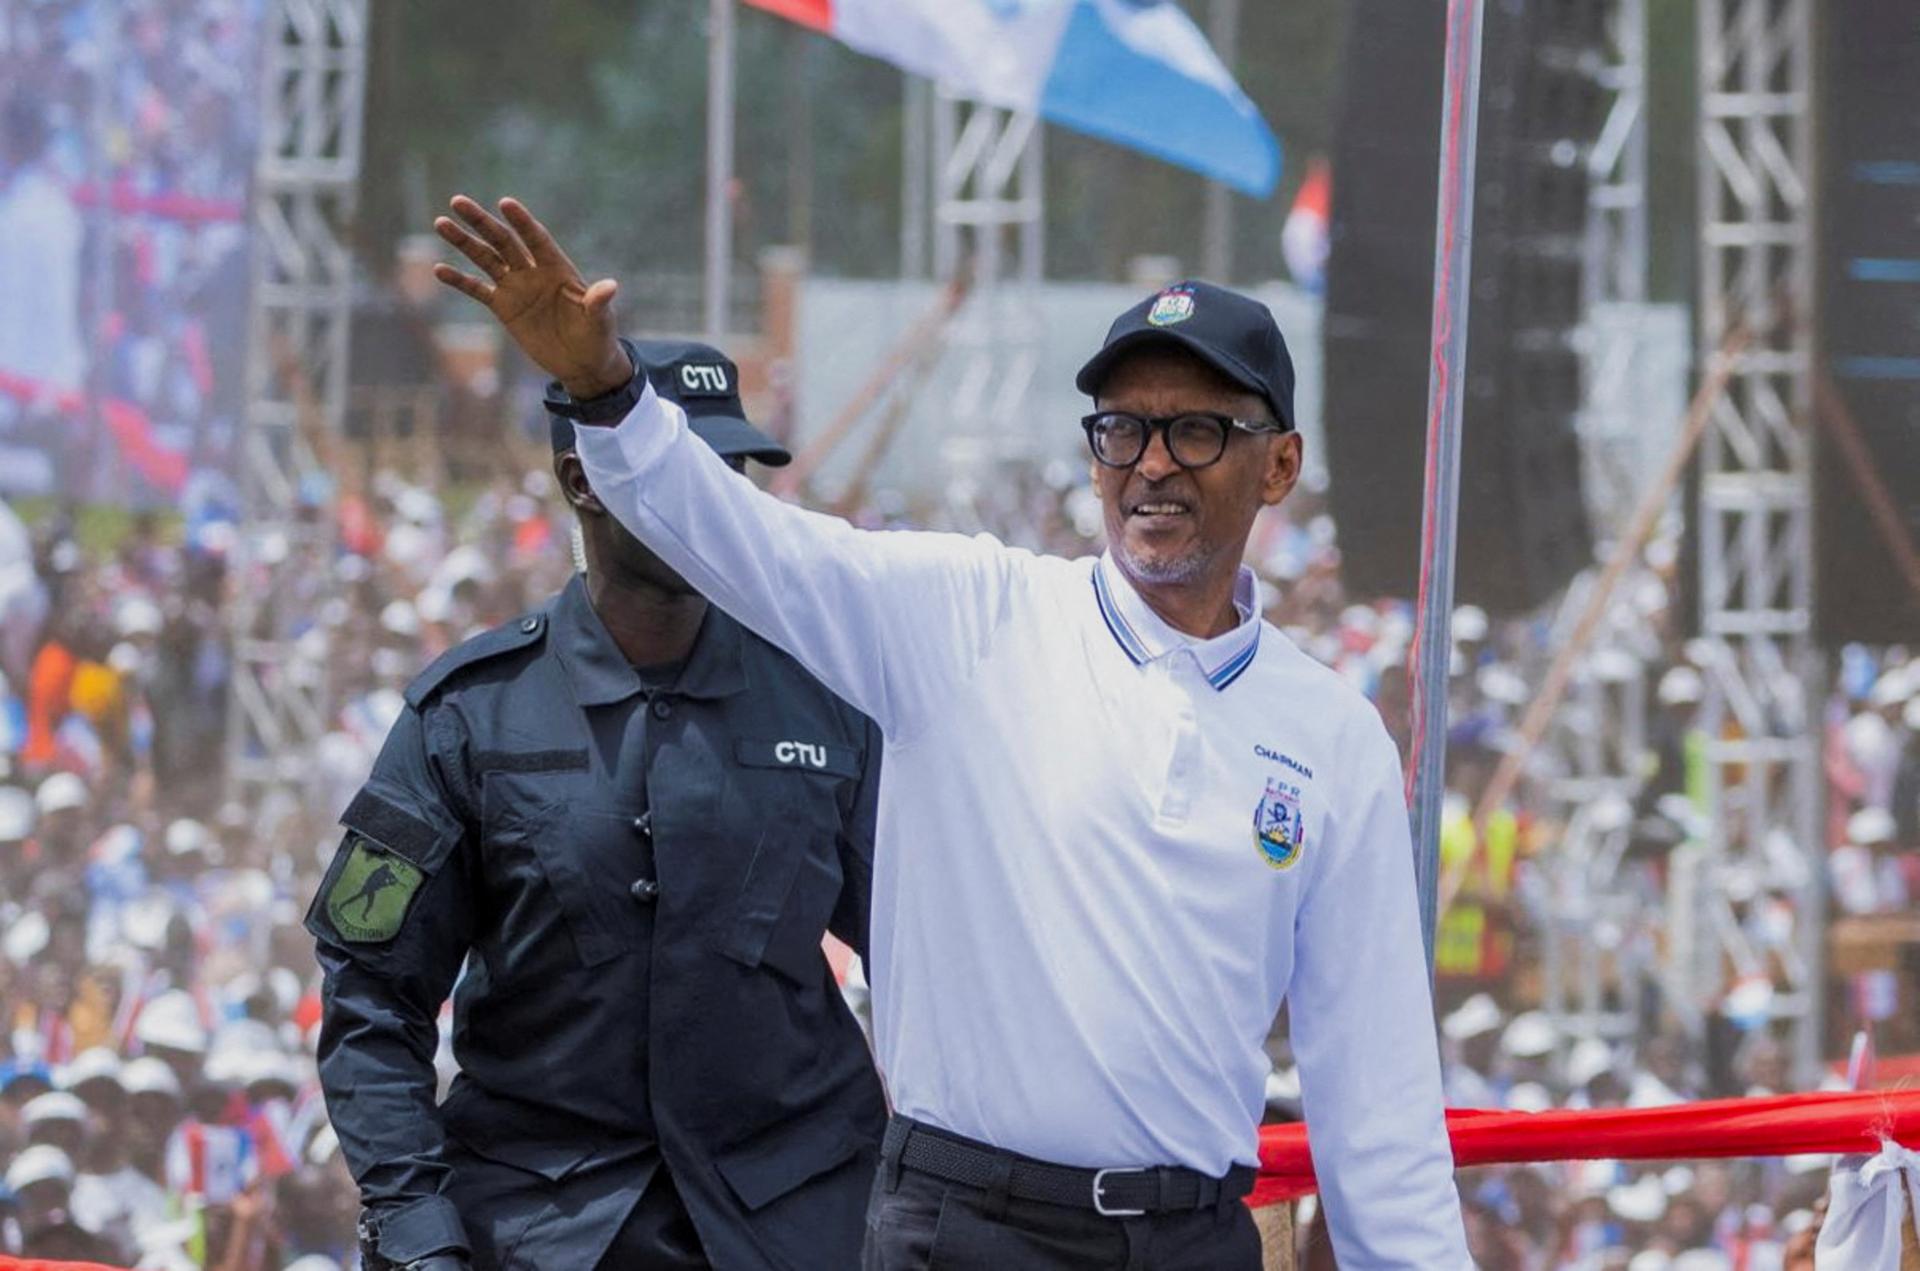 Ľudskoprávne skupiny varujú pred utláčaním pred voľbami v Rwande, poprední opozičníci nemôžu kandidovať